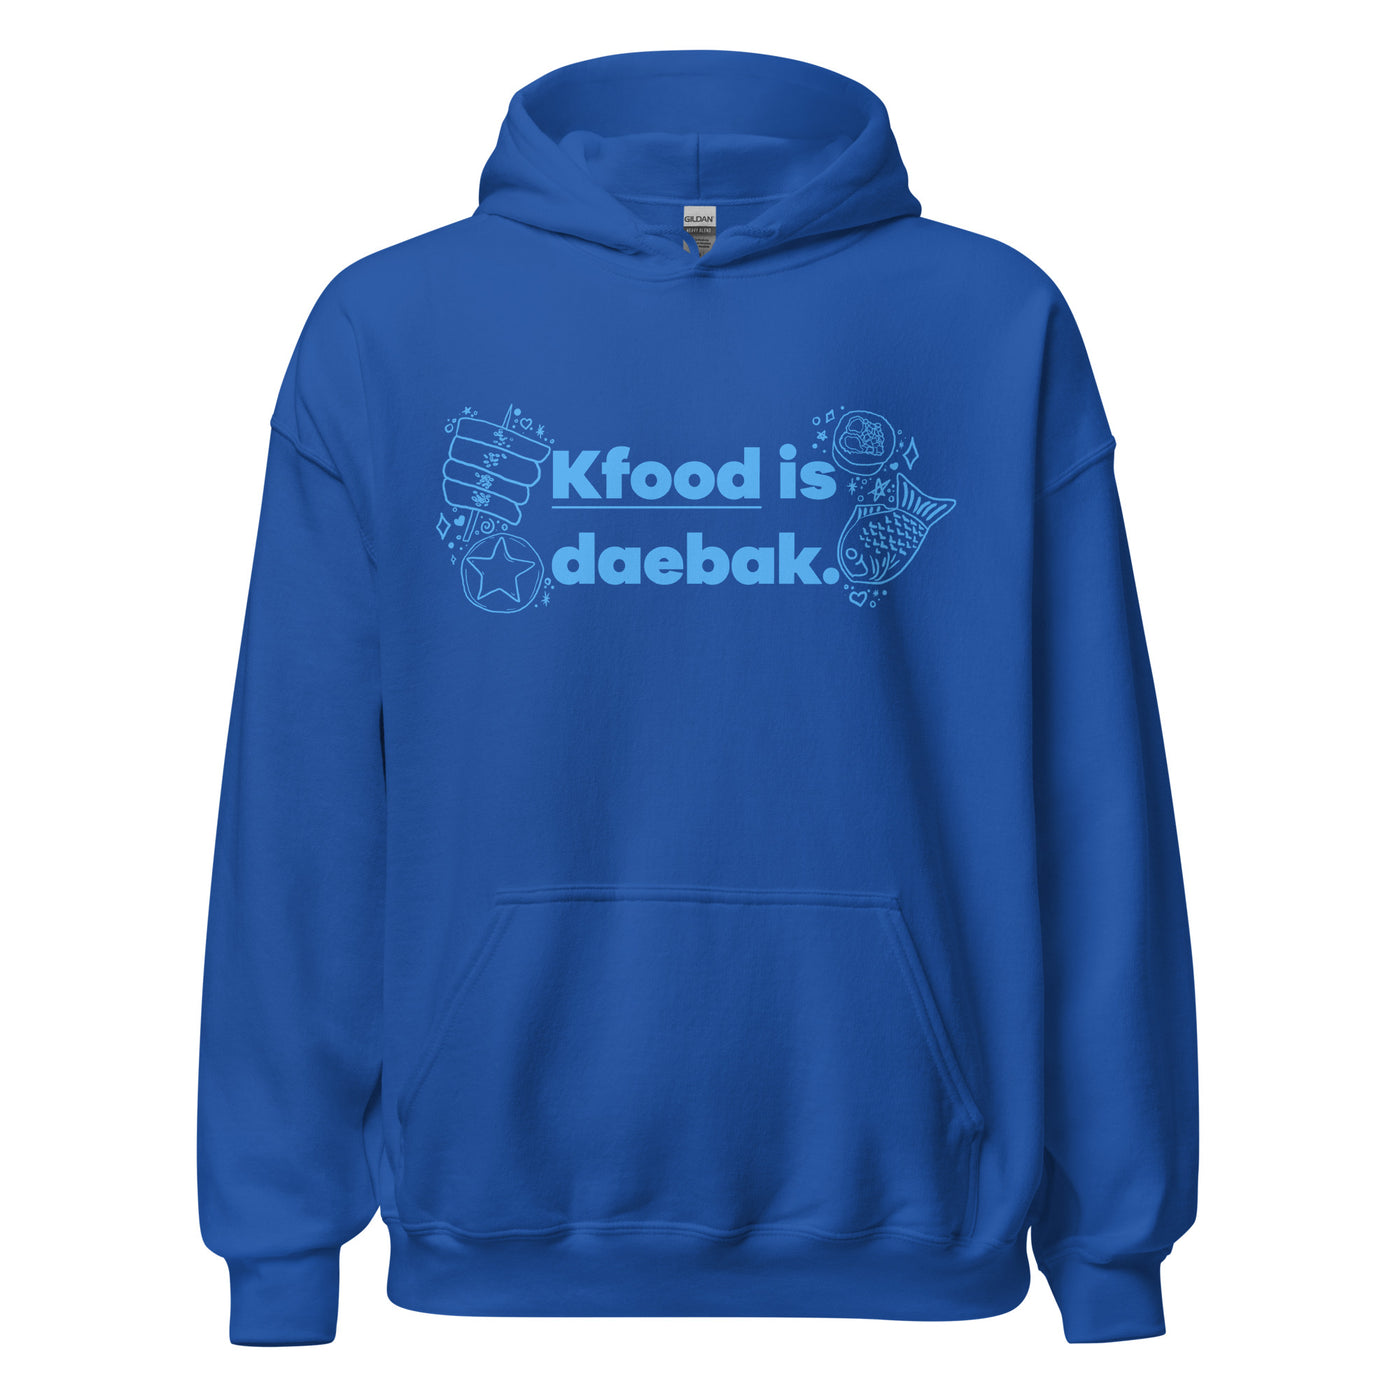 KFood is Daebak Hooded Sweatshirt